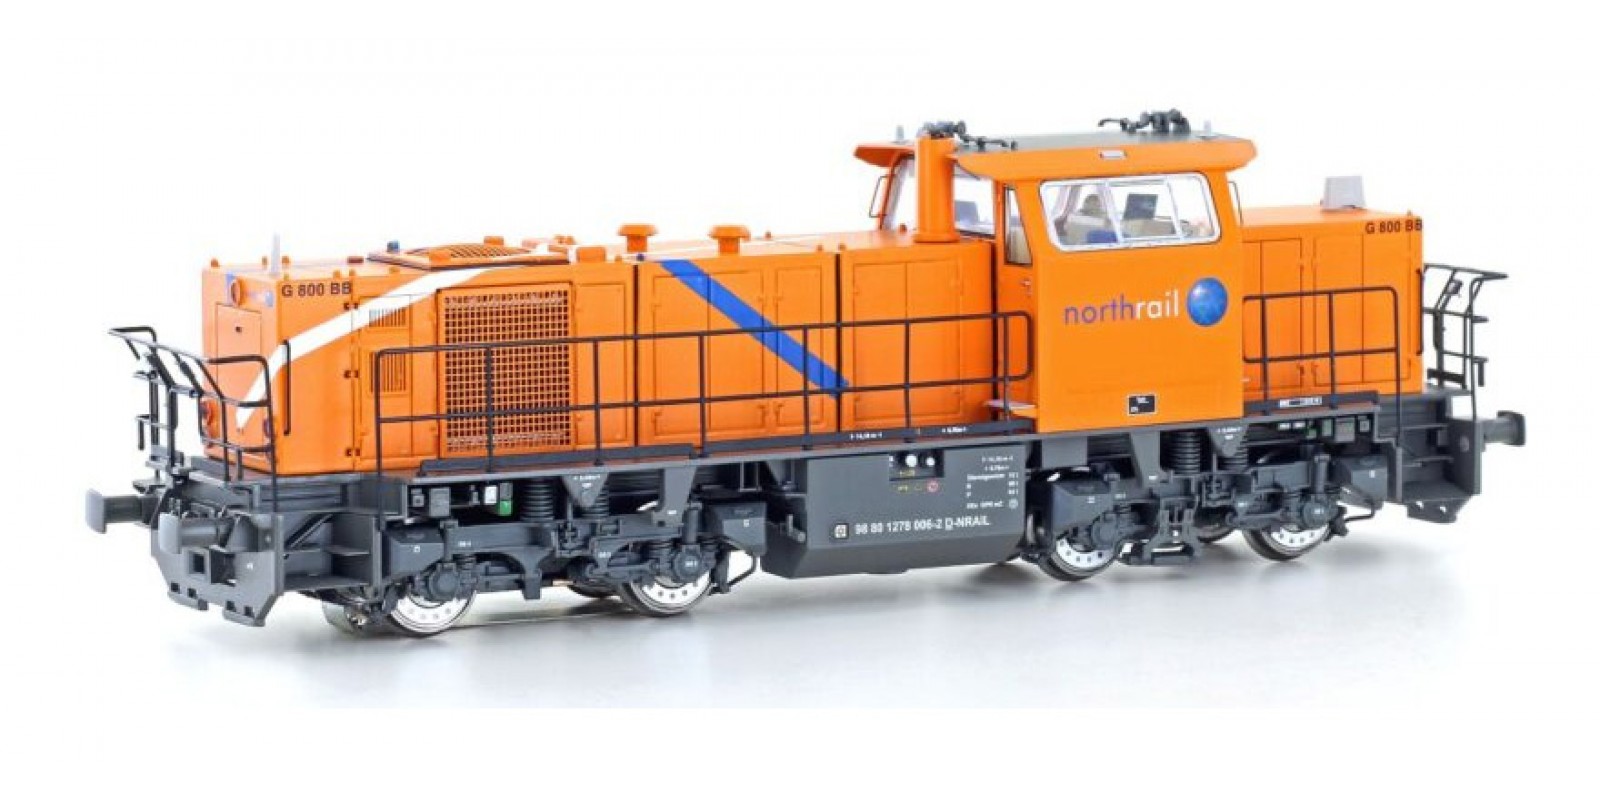 JA20742 Gauge H0 Diesel locomotive MaK G800 BB "Northrail", epoch VI, DCC with sound